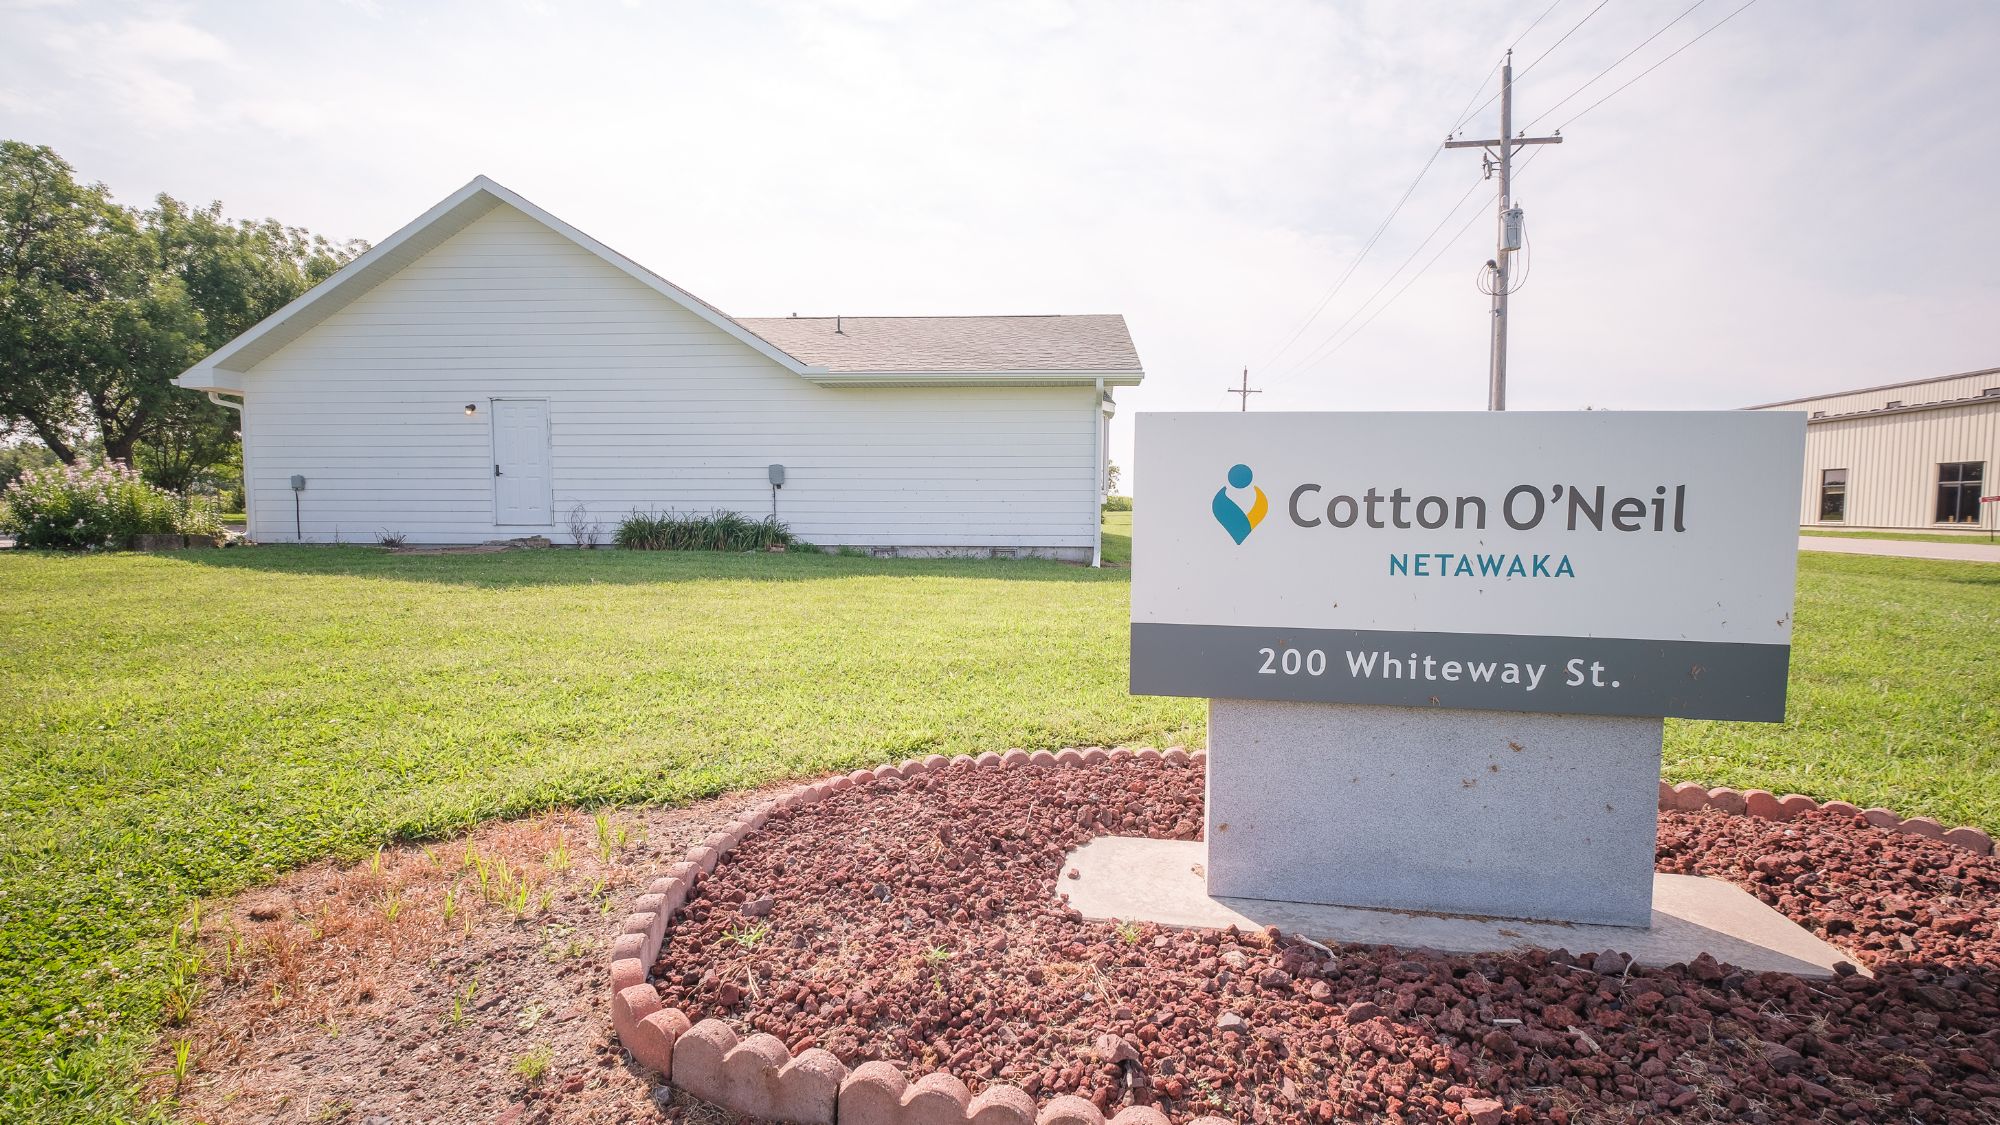 Cotton O'Neil Netawaka 200 Whiteway St, Netawaka Kansas 66516